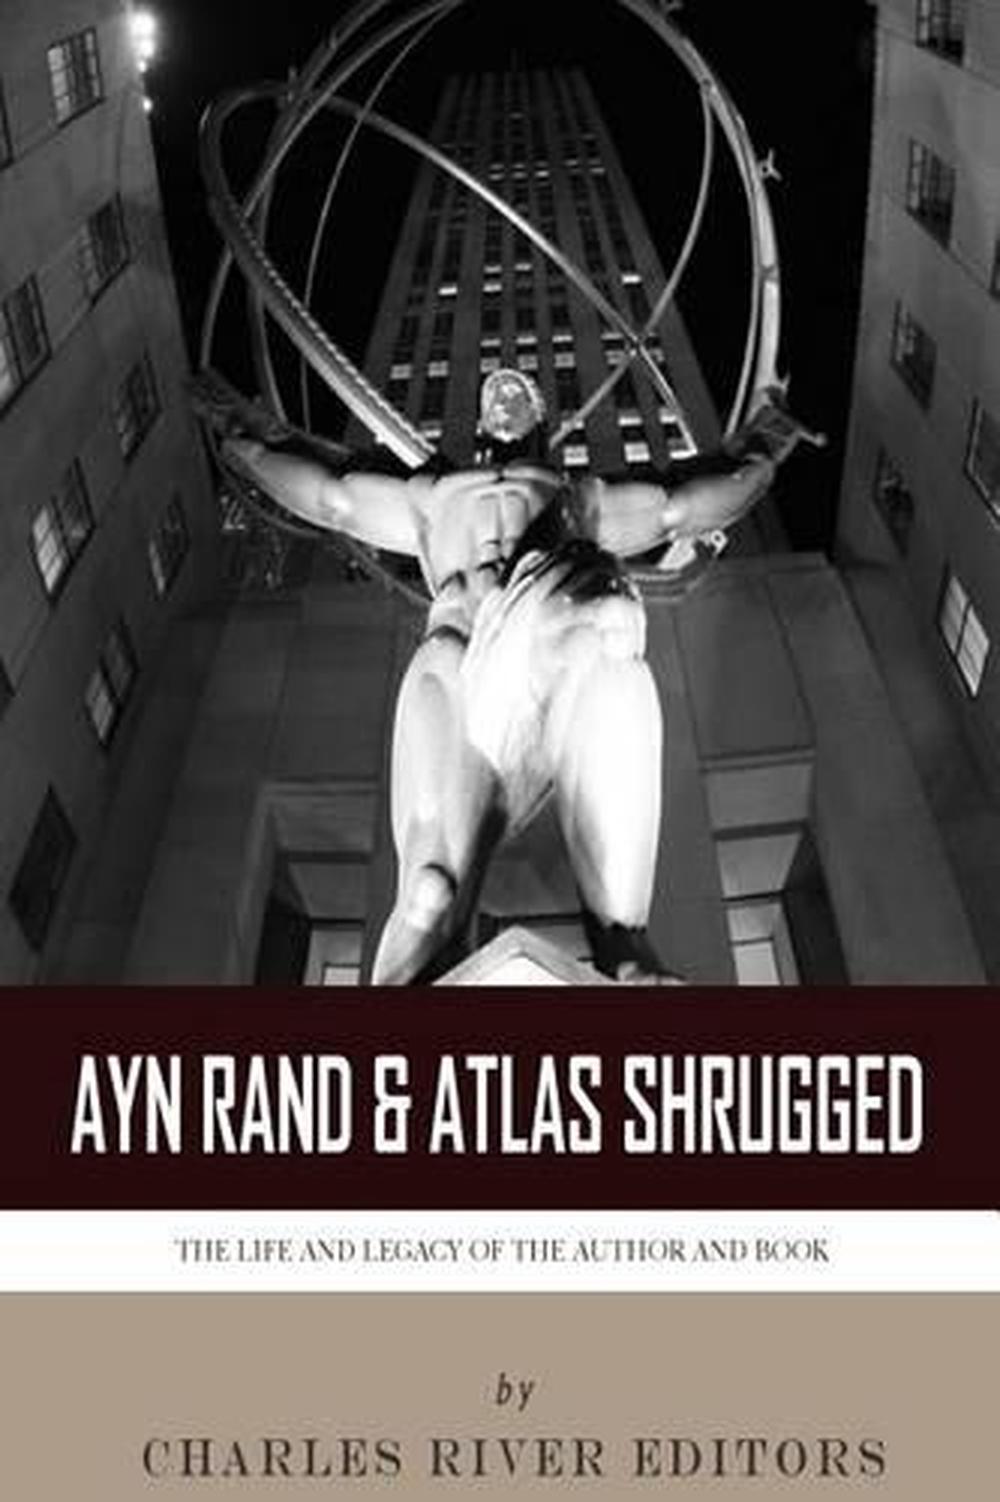 Atlas Shrugged by Ayn Rand